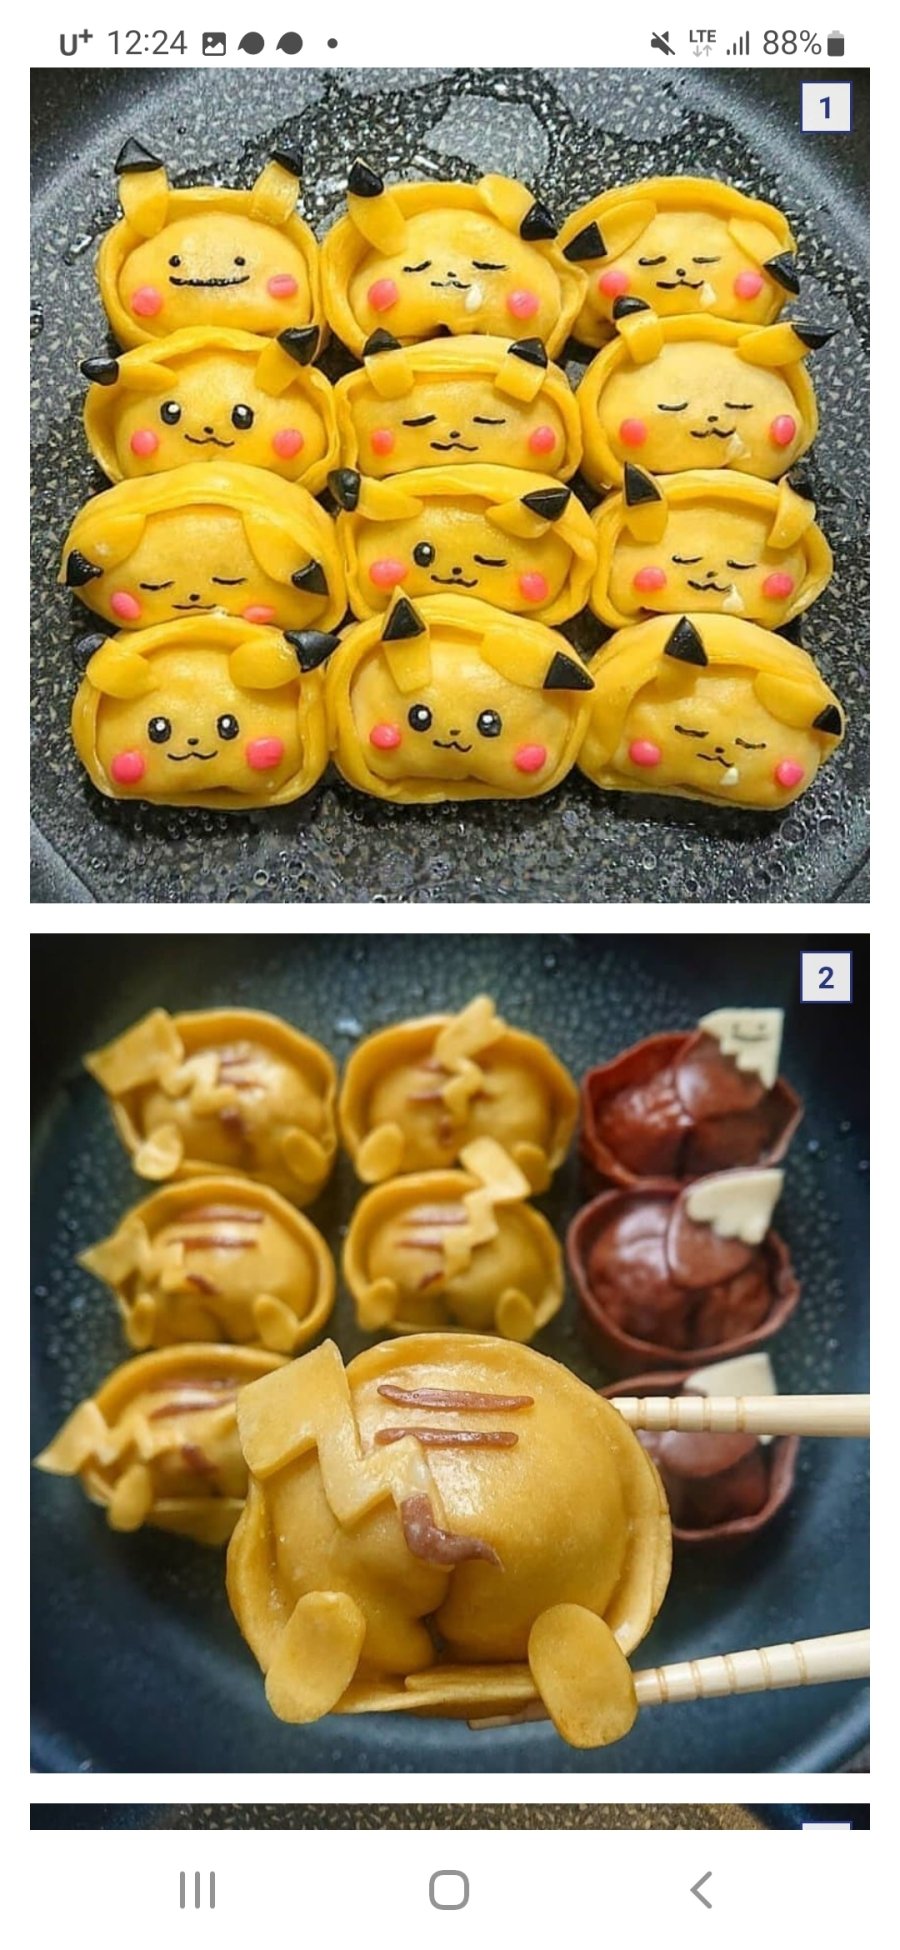 일본 교토의 교자만두 장인이 만든 만두들